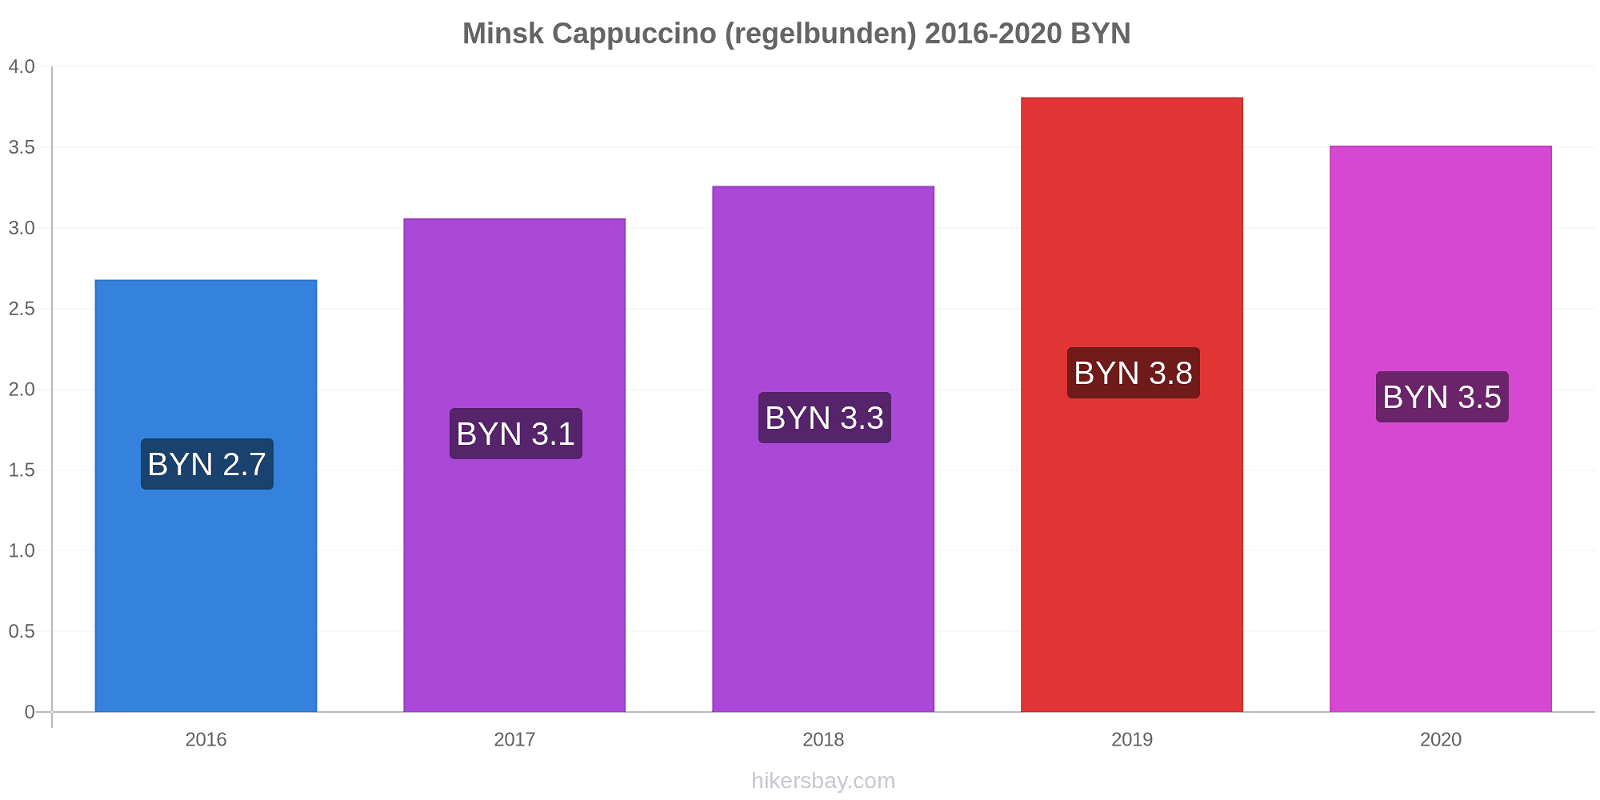 Minsk prisförändringar Cappuccino (regelbunden) hikersbay.com